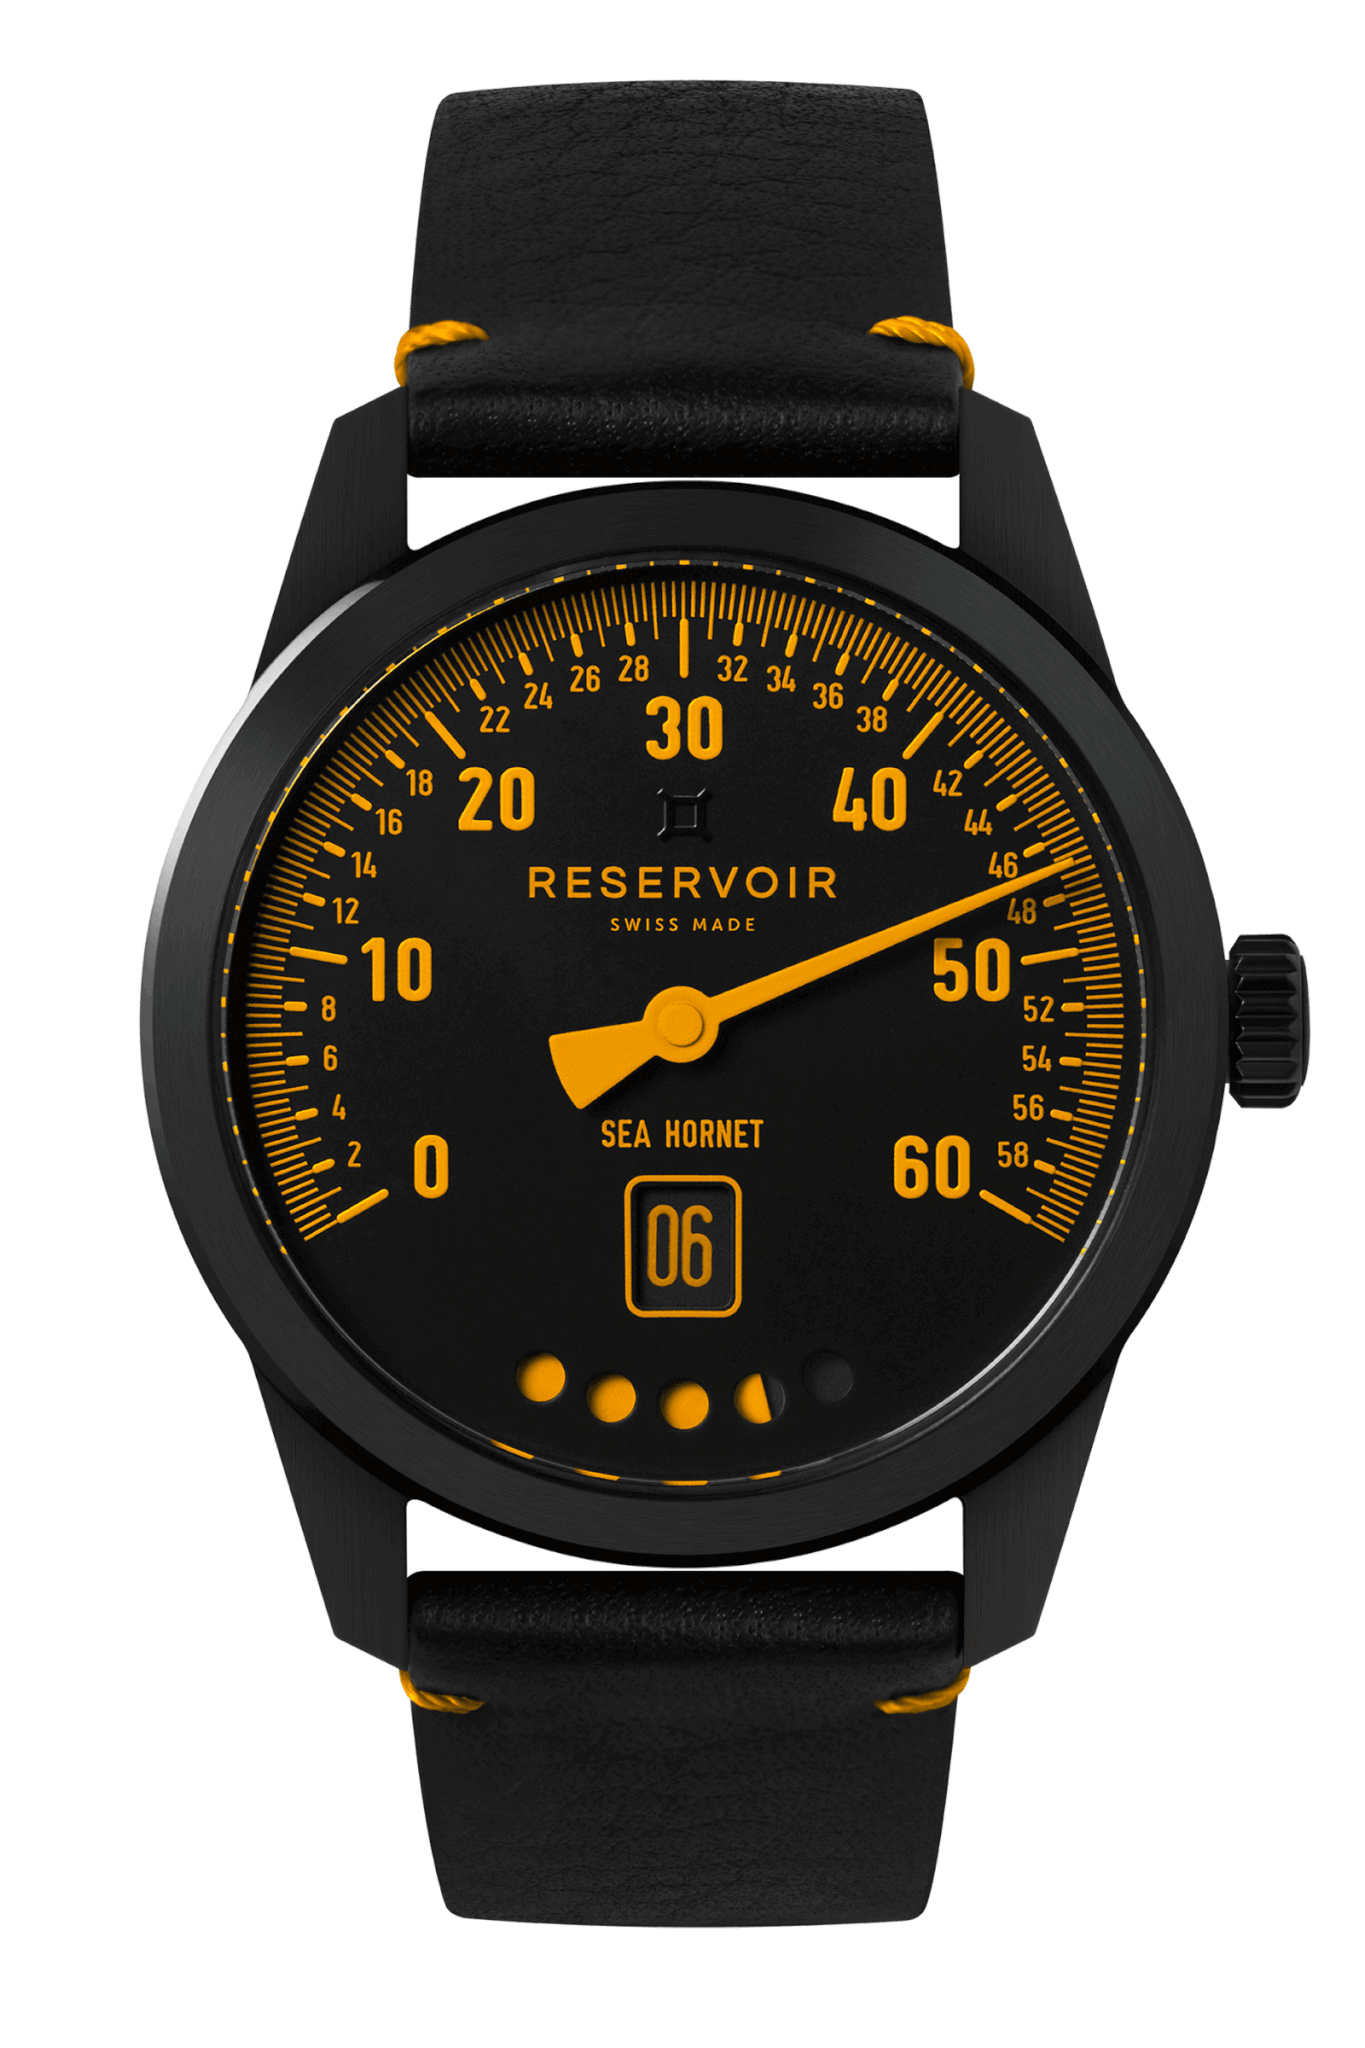 Tiefenmesser Submarines Luxury Watch in Very Dark Brown, Medium Orange, and Light Grey.